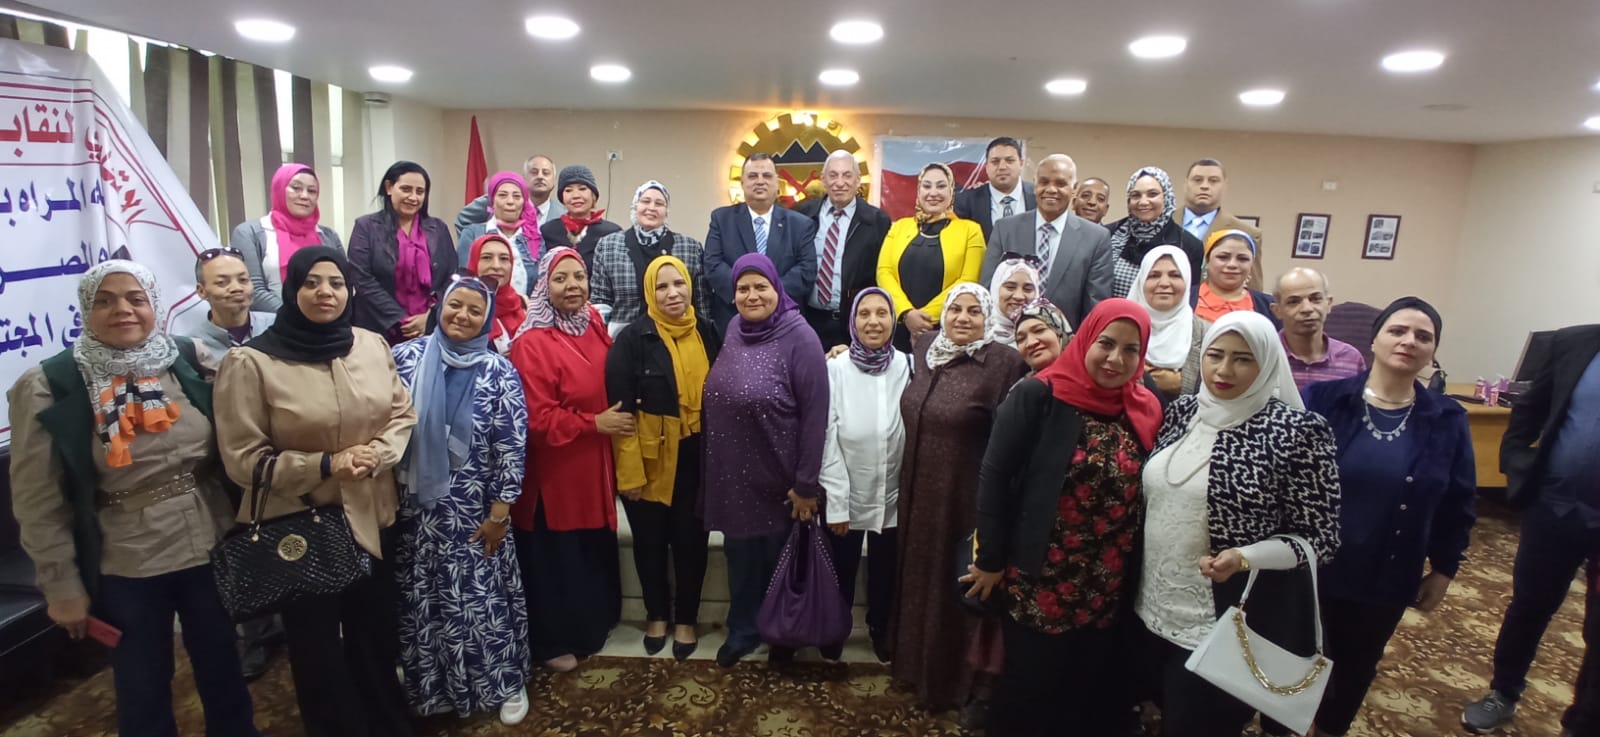 المرأة المصرية أيقونة التقدم والتنمية في المجتمع المصري…ندوة في اتحاد عمال الجيزة